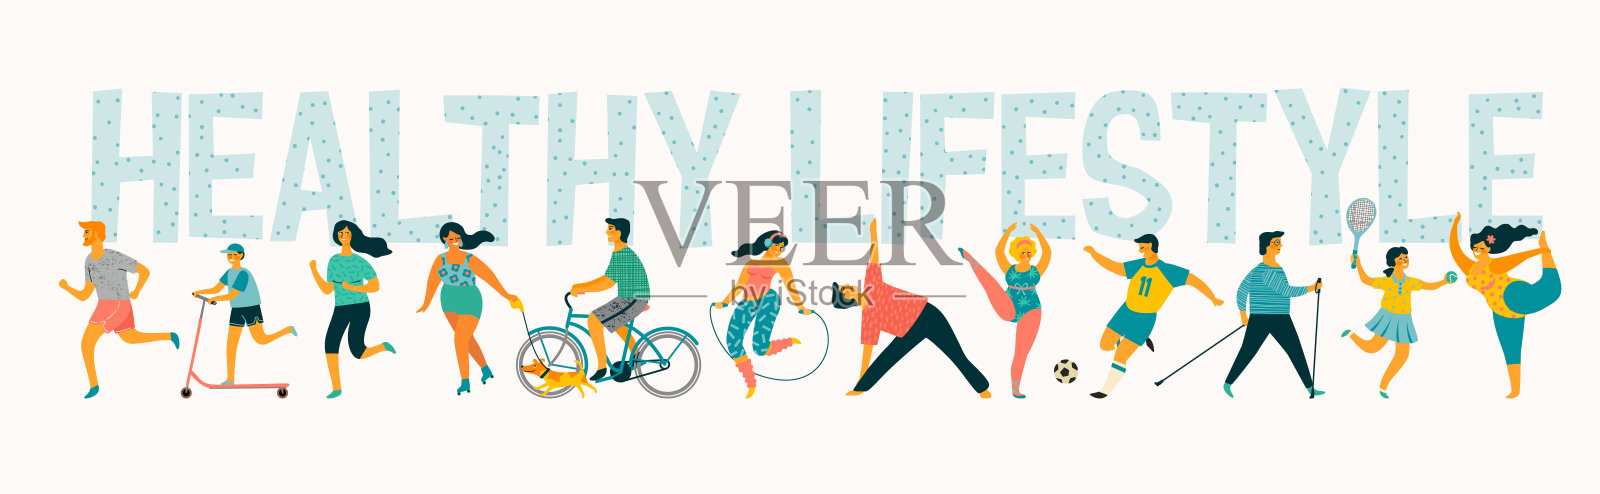 世界卫生日。Vector temale以积极健康的生活方式生活。插画图片素材